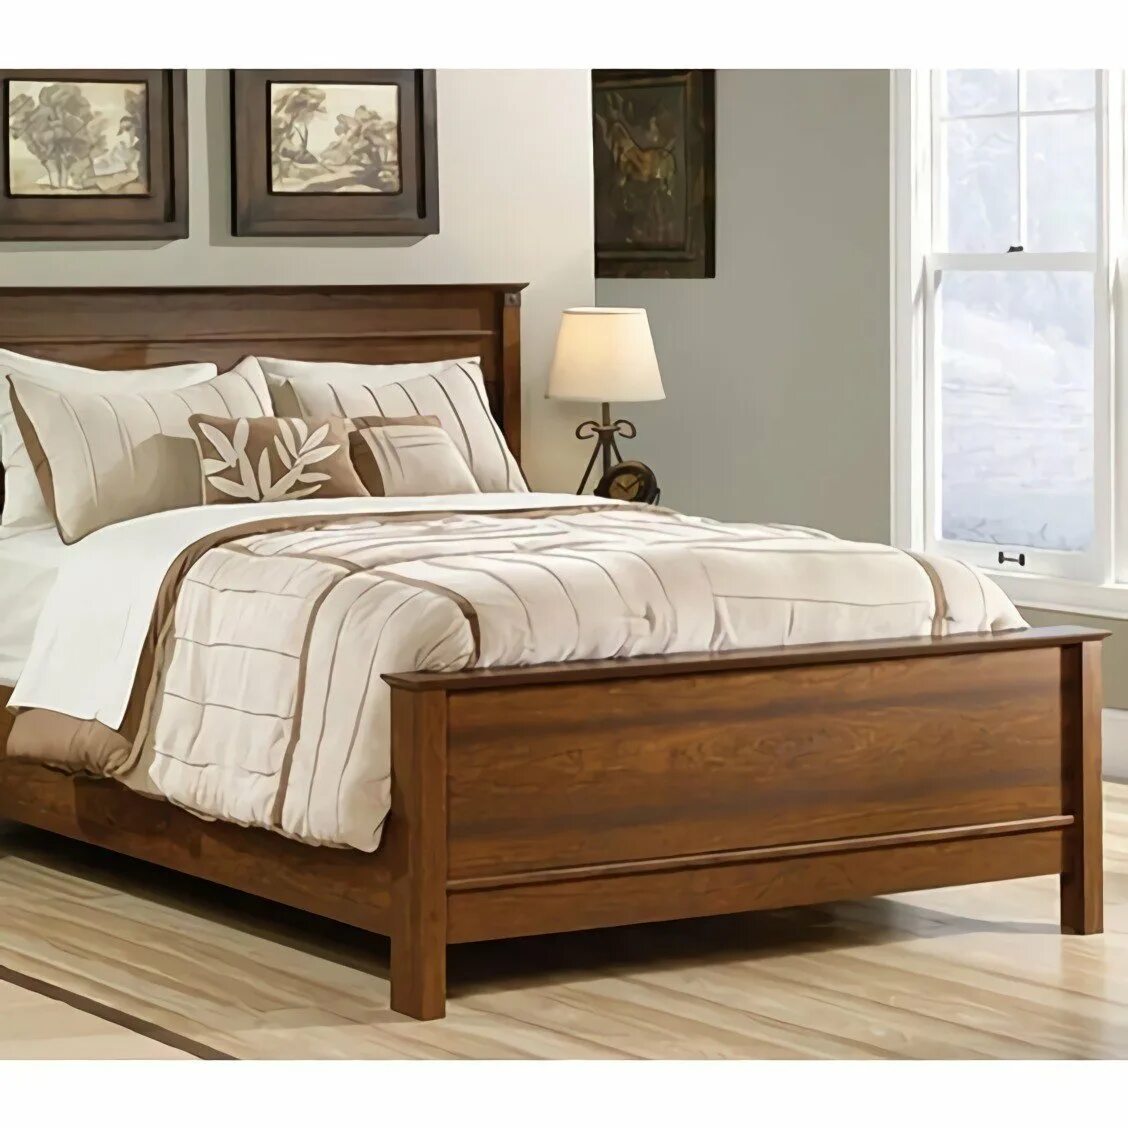 Двуспальная кровать фото дерево. Кровать дерево. Стильные деревянные кровати. Кровать двуспальная деревянная. Кровать из дерева двуспальная.